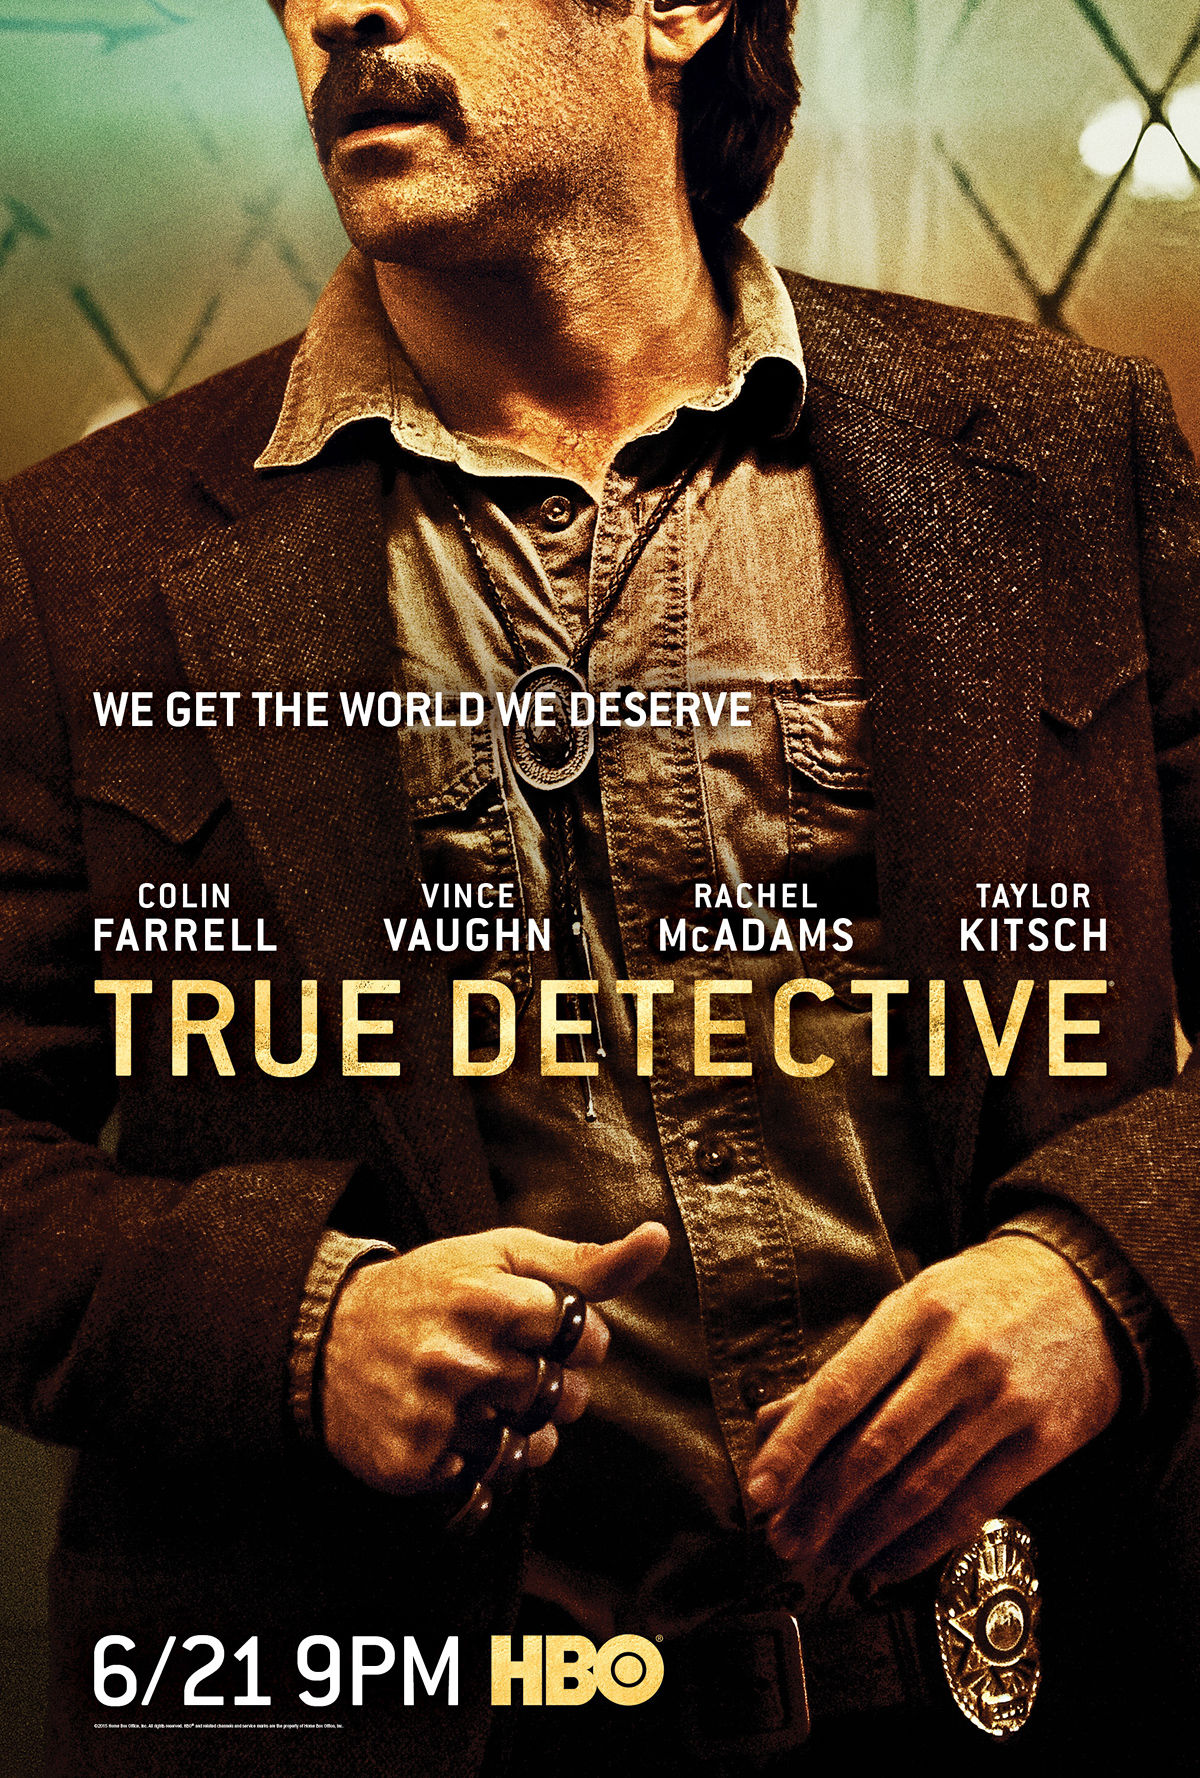 Farrell True Detective Poster